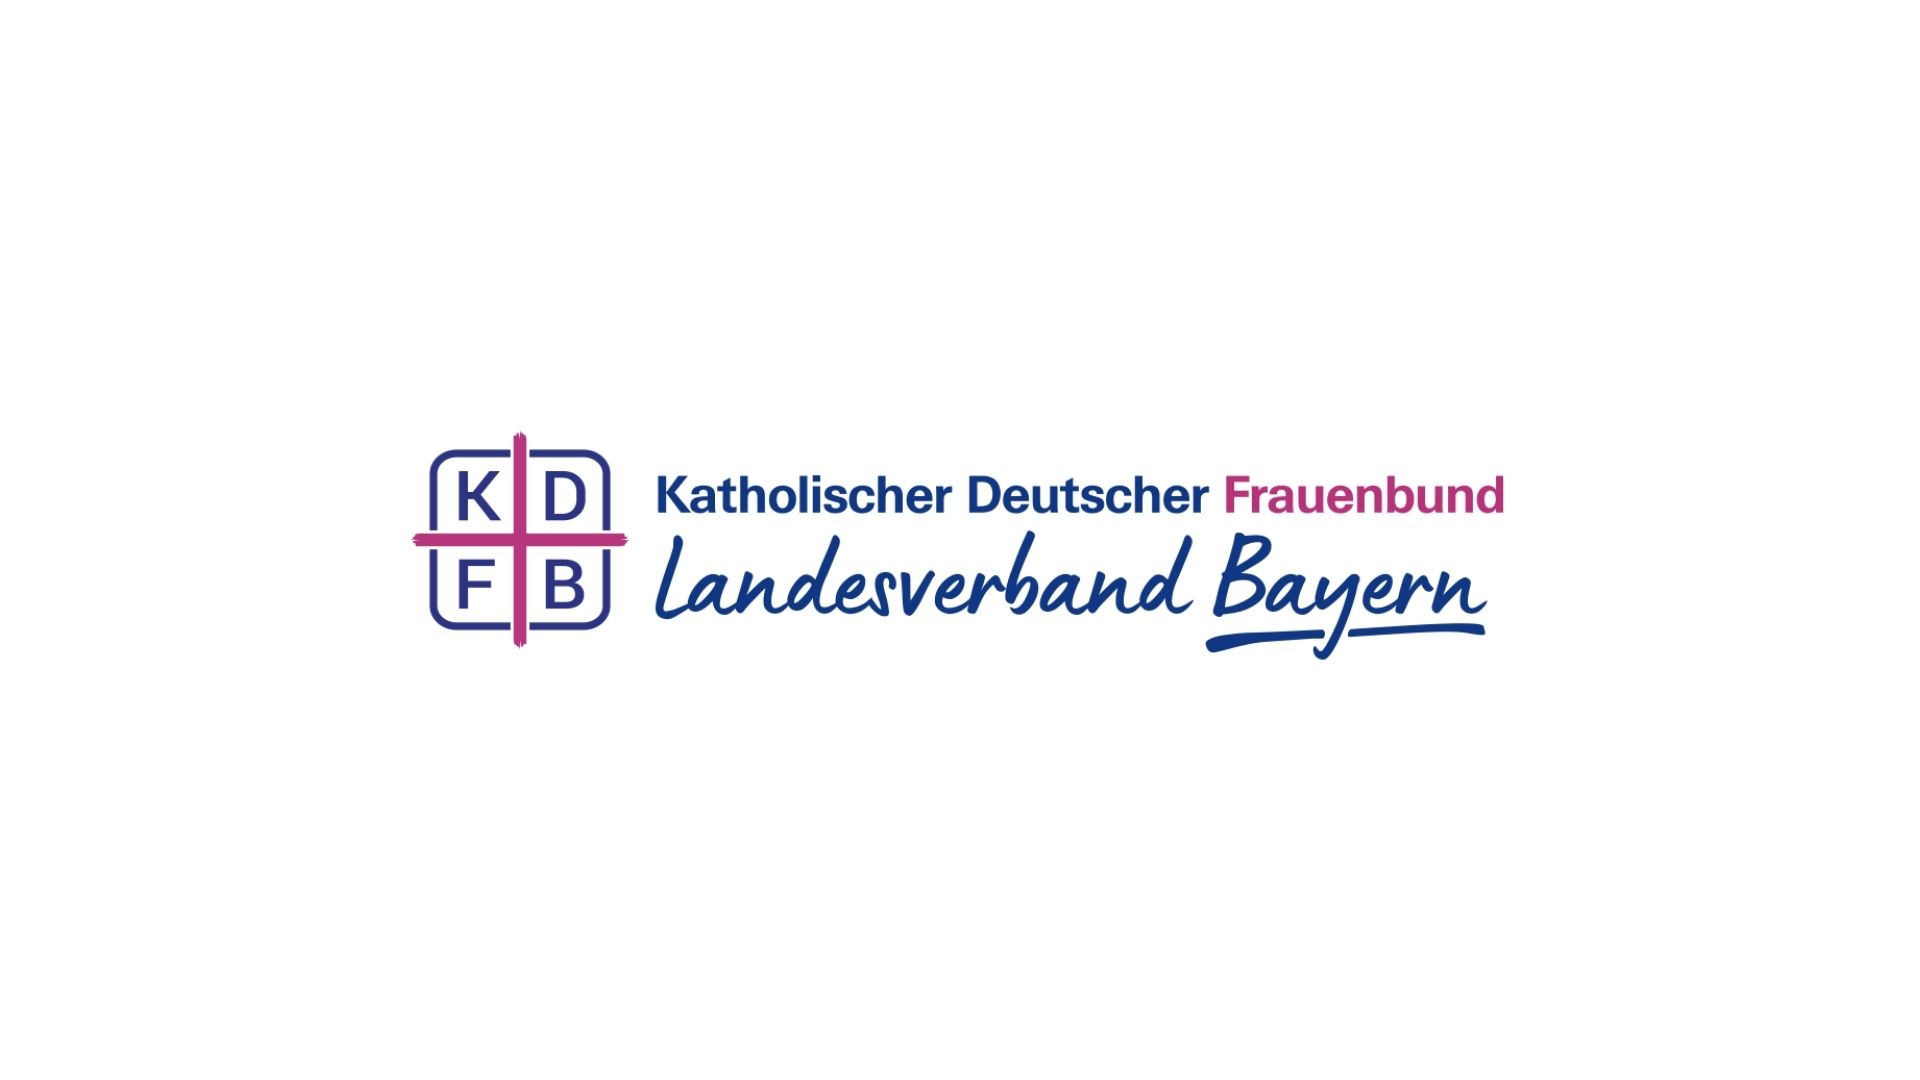 KDFB Landesverband Bayern - Logo